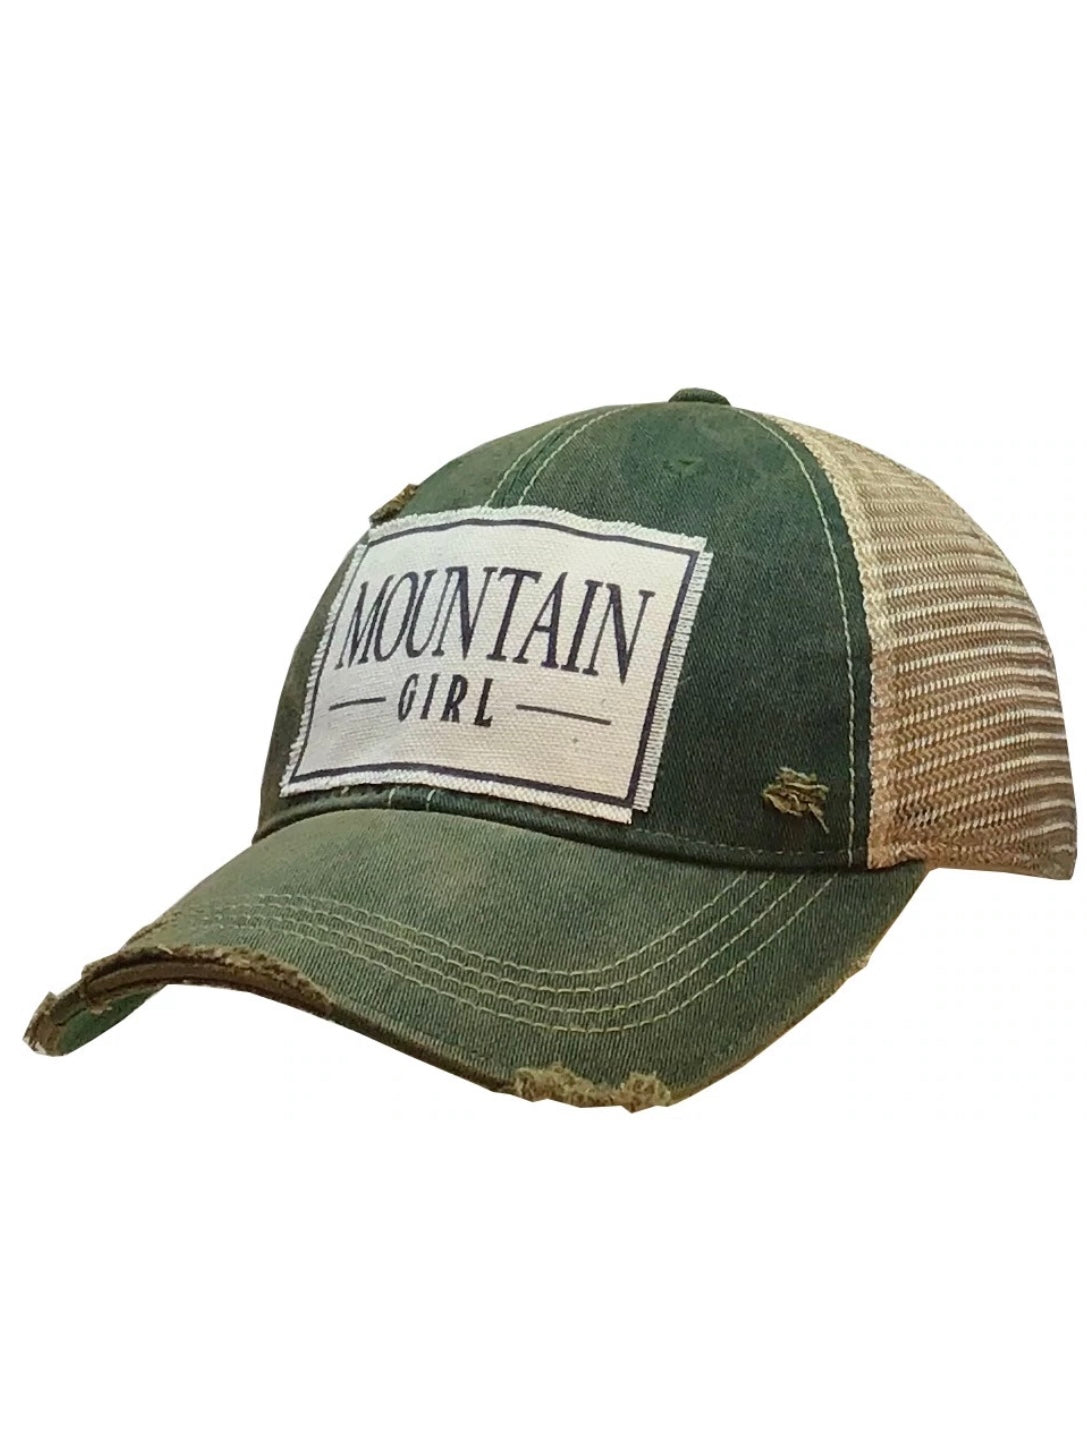 Outdoorsy Trucker Hats